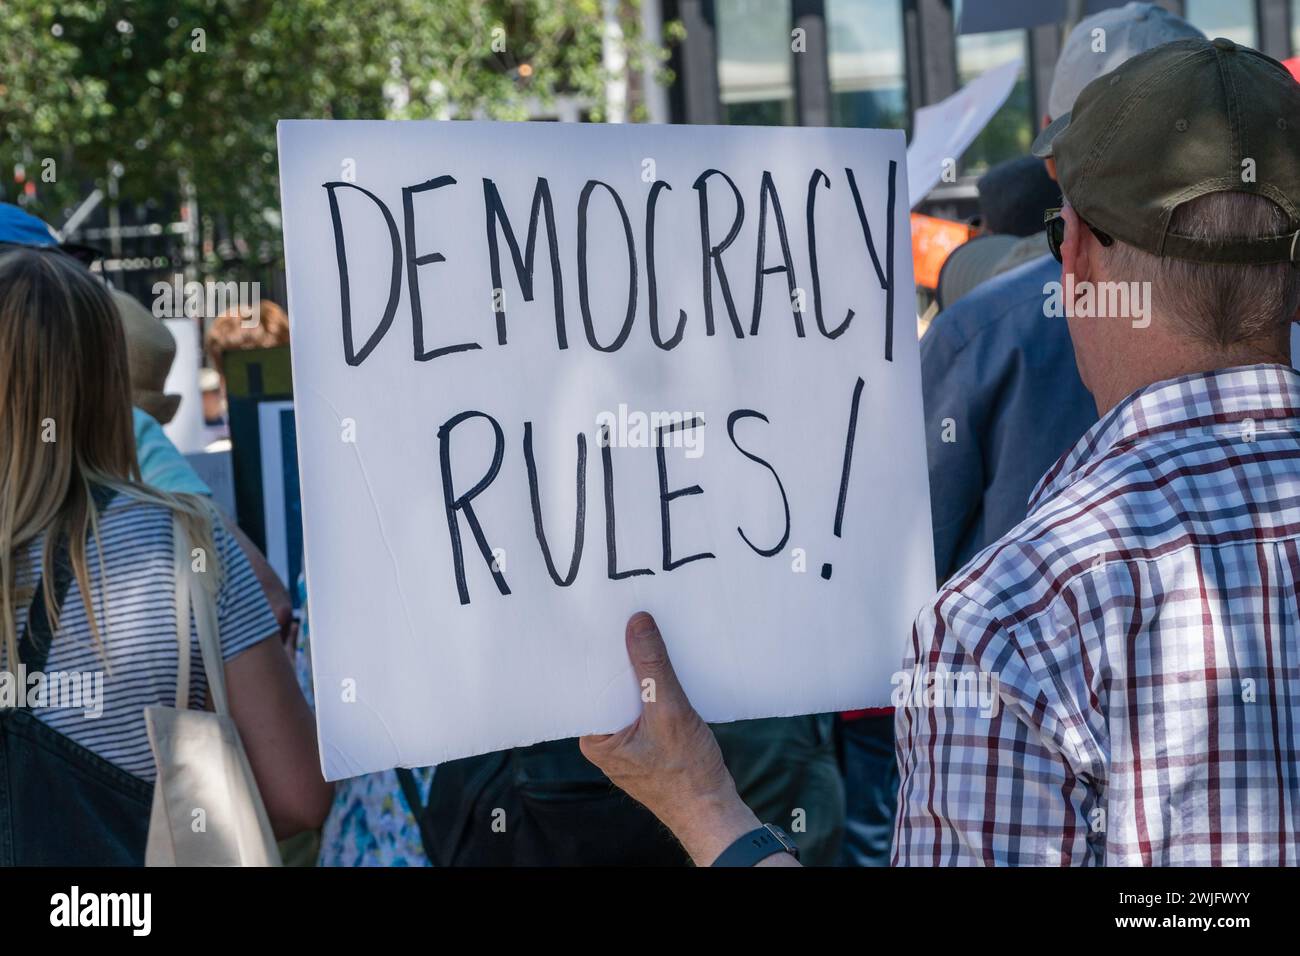 Sarasota, Floride, États-Unis - 24 mars 2018 - des manifestants se rassemblent lors de la manifestation organisée par des étudiants pour nos vies, avec une pancarte indiquant « règles de la démocratie » Banque D'Images